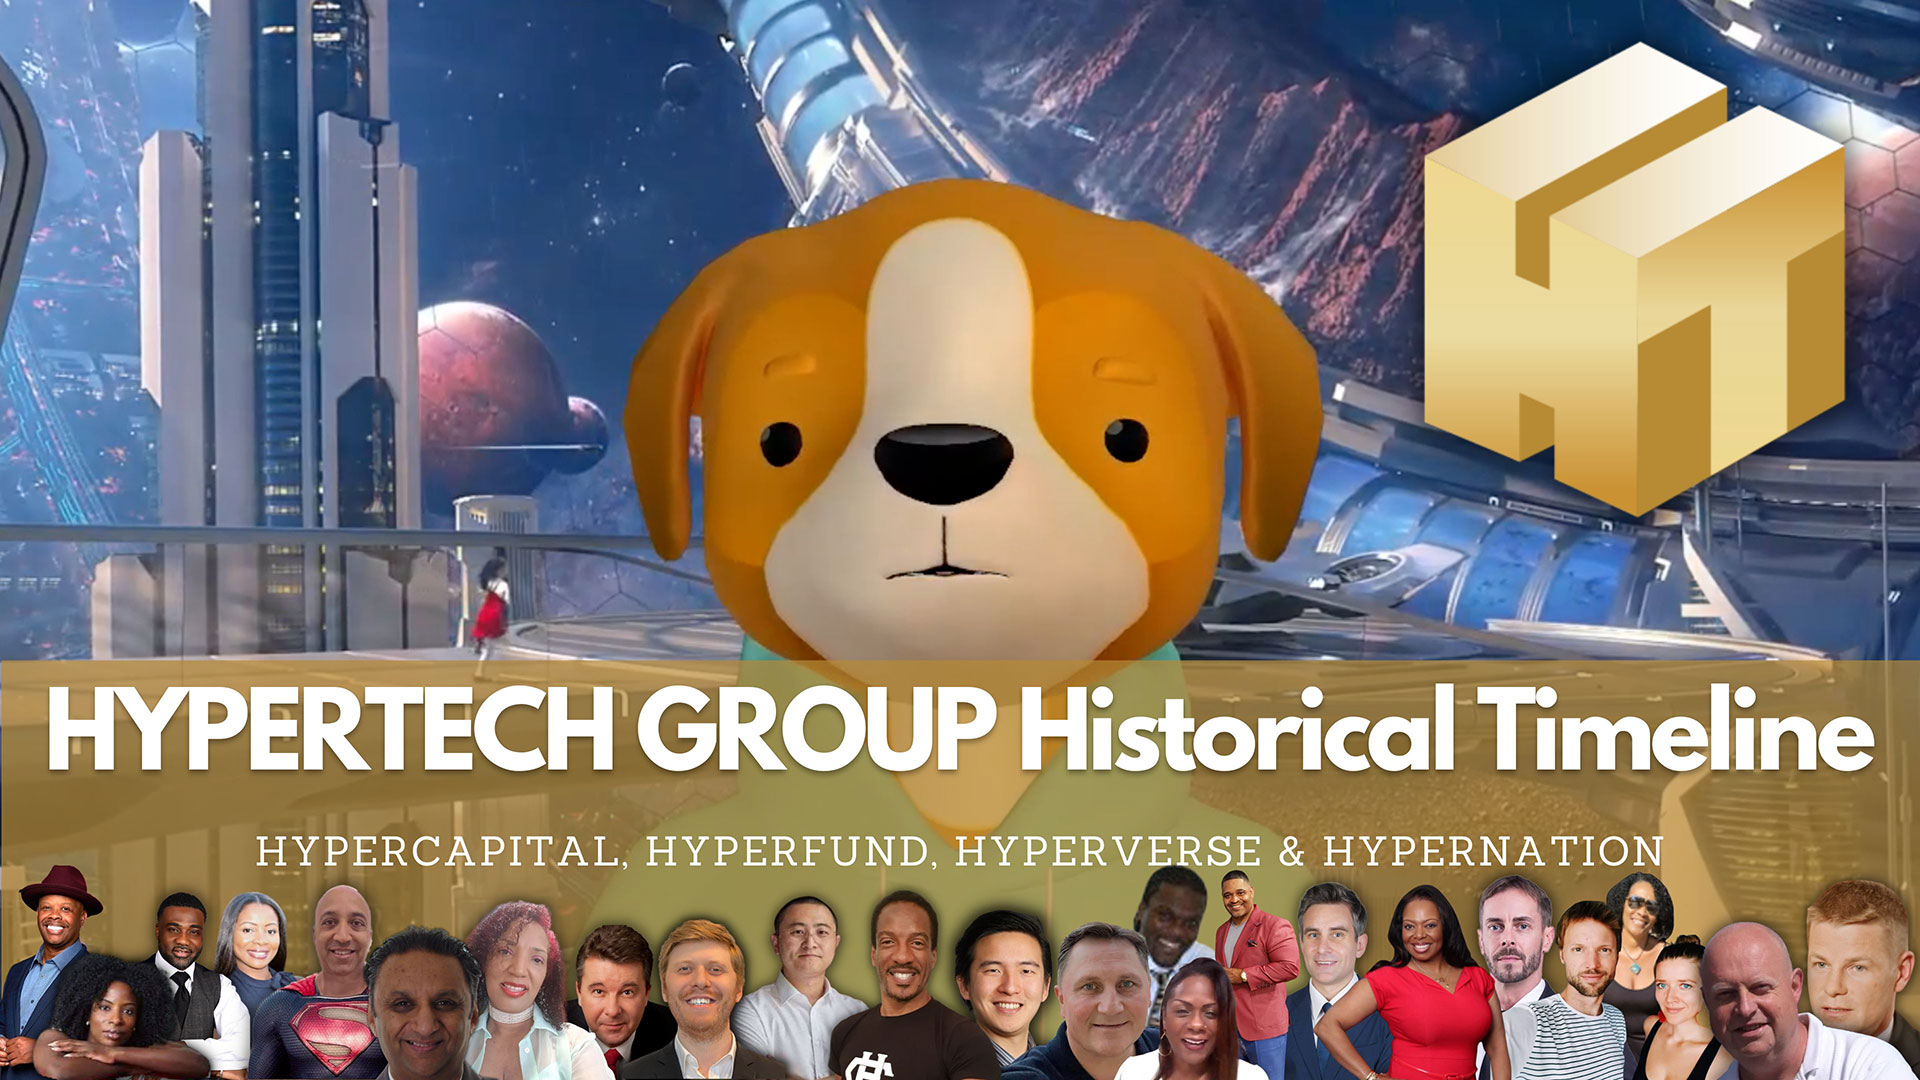 Hypertech Group Historical Timeline 2014 to 2022 HyperCapital HyperFund HyperVerse HyperNationnbsp› Entrepreneur Decision Maker Connector Podcaster Educator